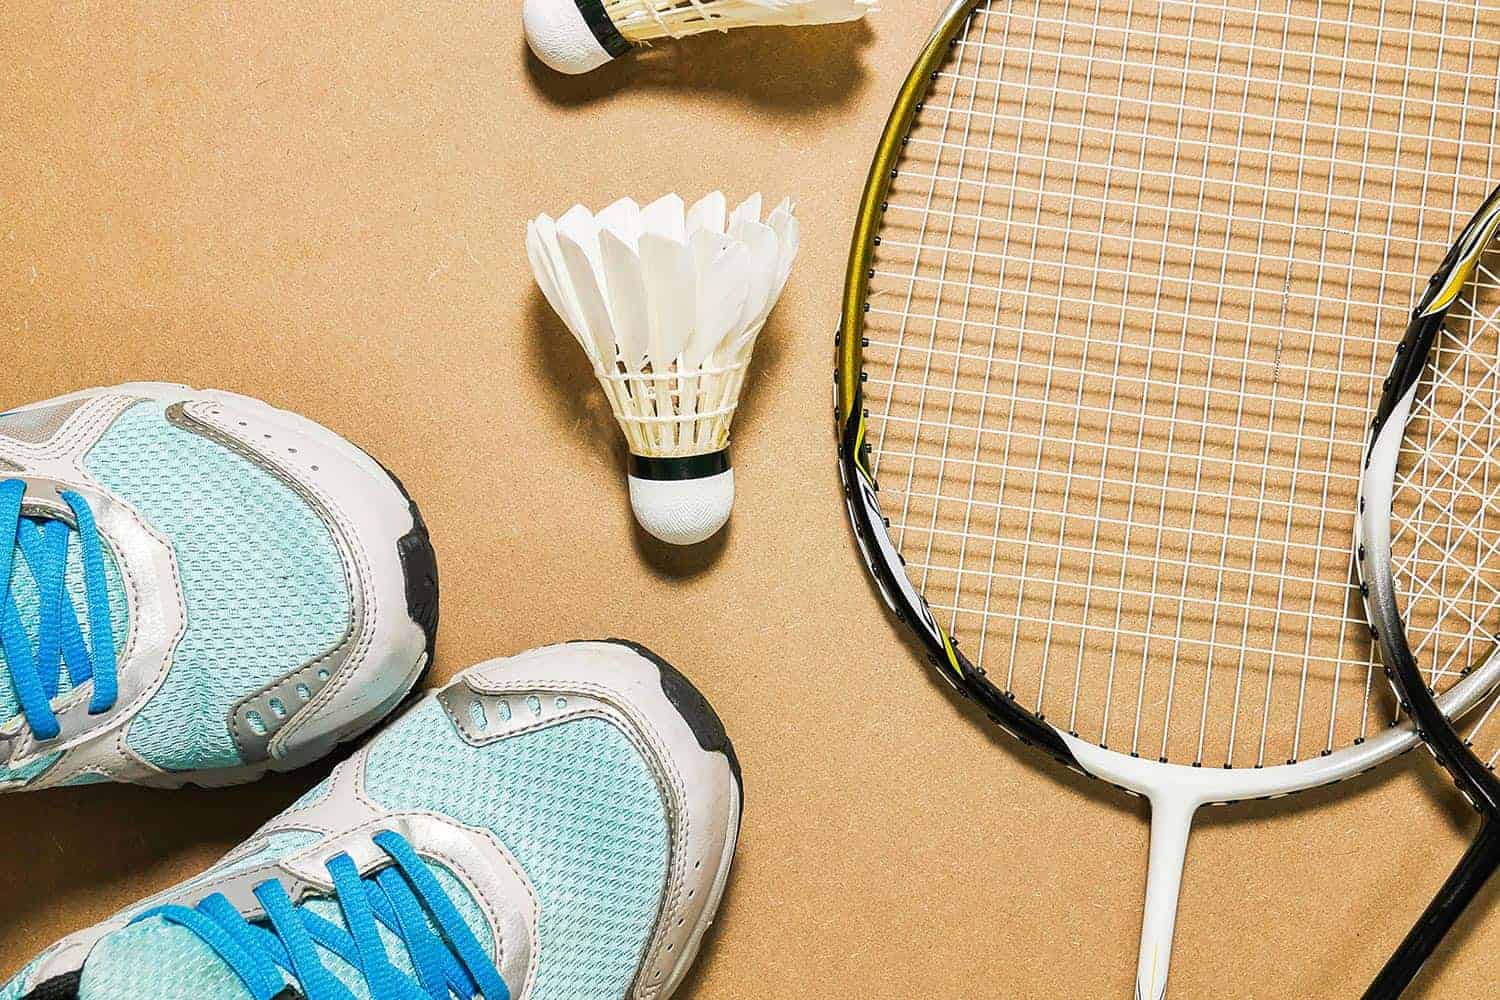 Klub sportowy Fabianowo Badminton